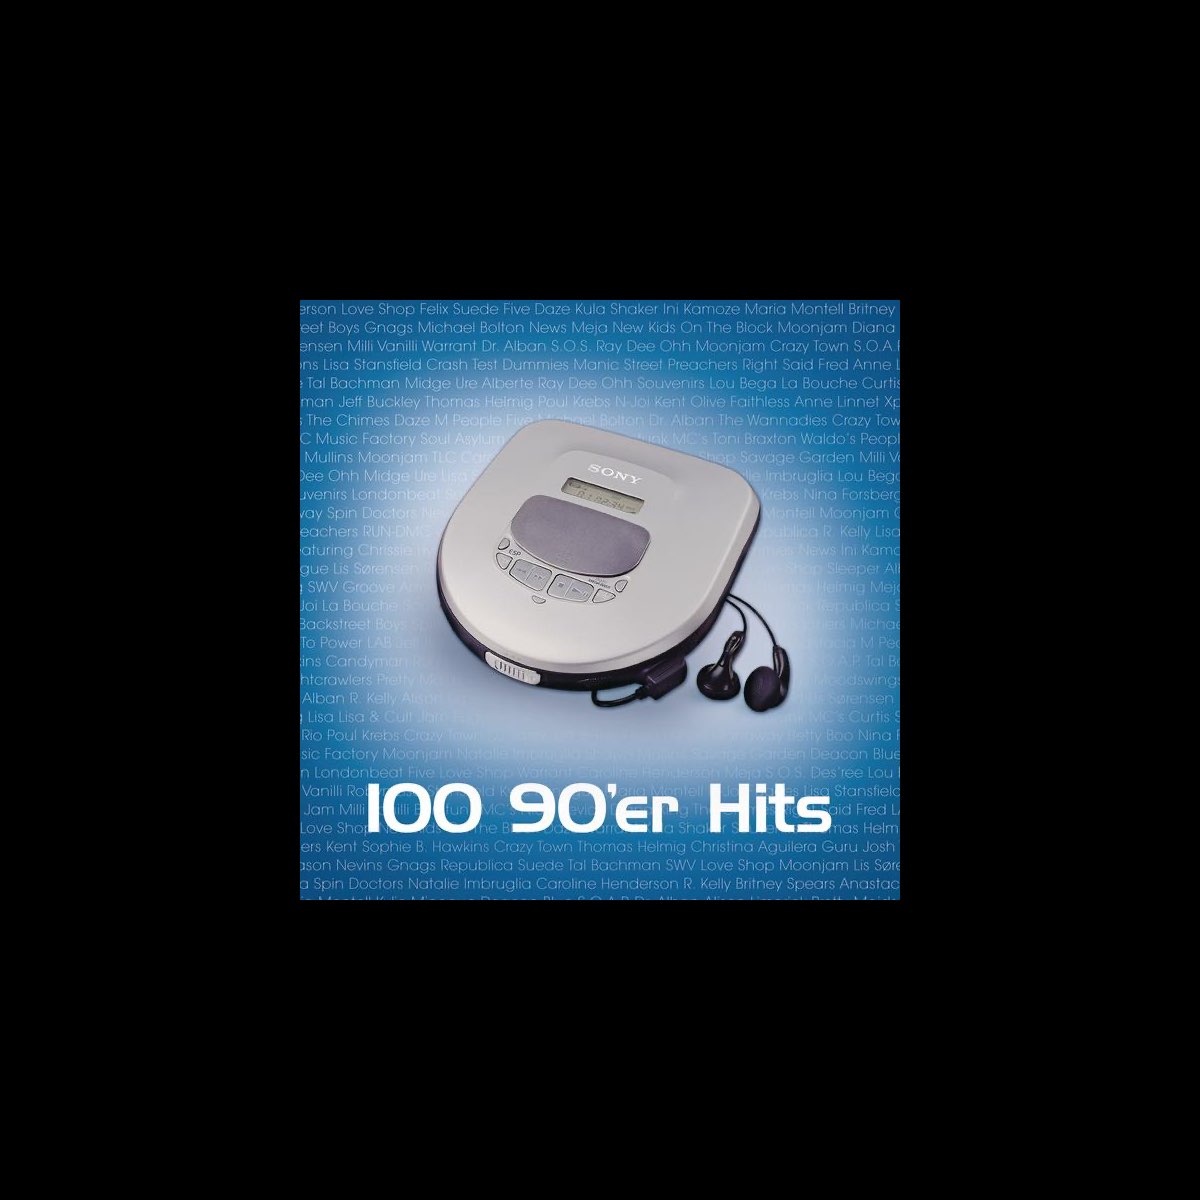 lukke svejsning Foresee 100 90'er Hits af Various Artists på Apple Music